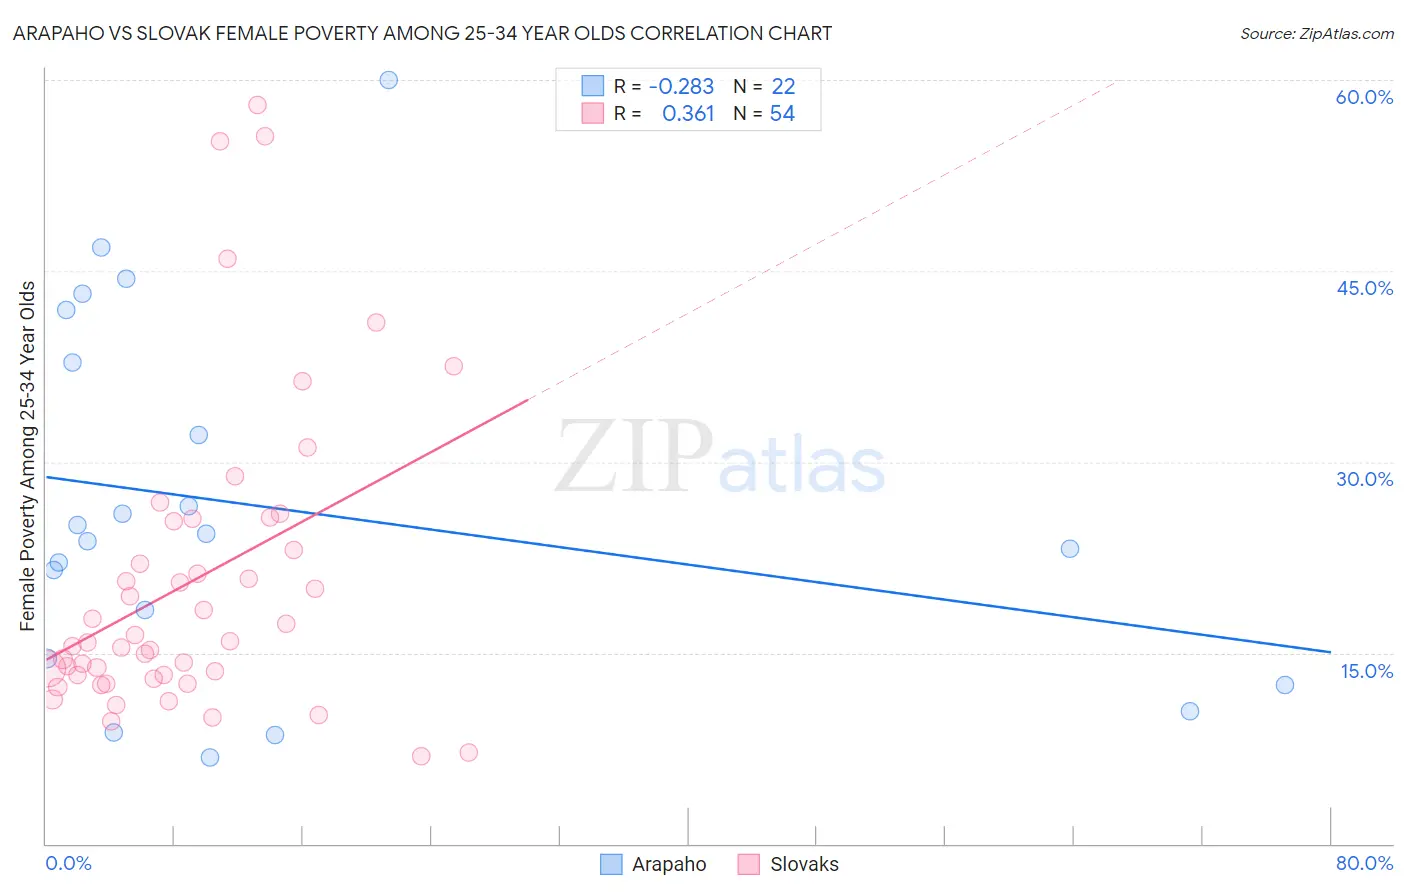 Arapaho vs Slovak Female Poverty Among 25-34 Year Olds